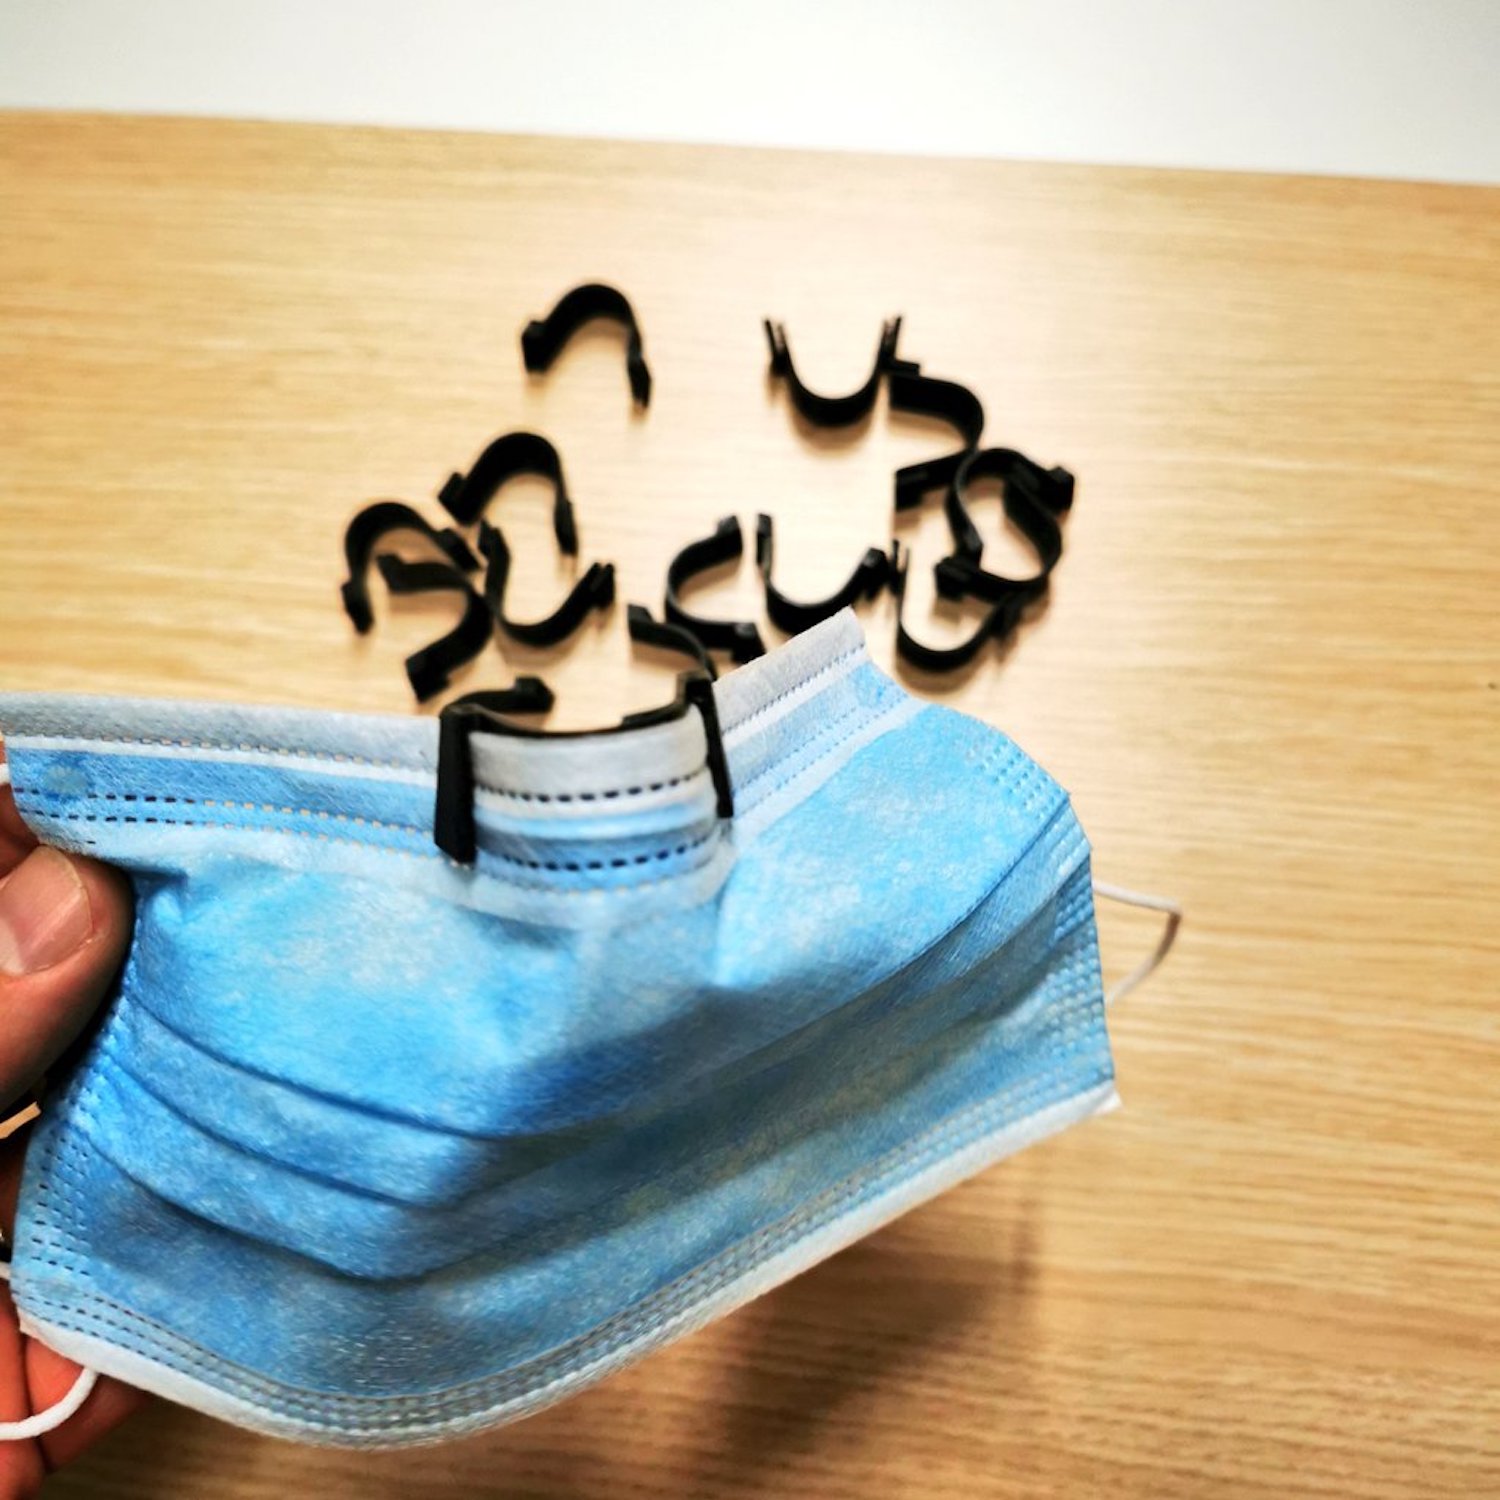 Impression 3D : Gérald Defoing a conçu un pince-nez anti-buée pour ceux qui portent des lunettes